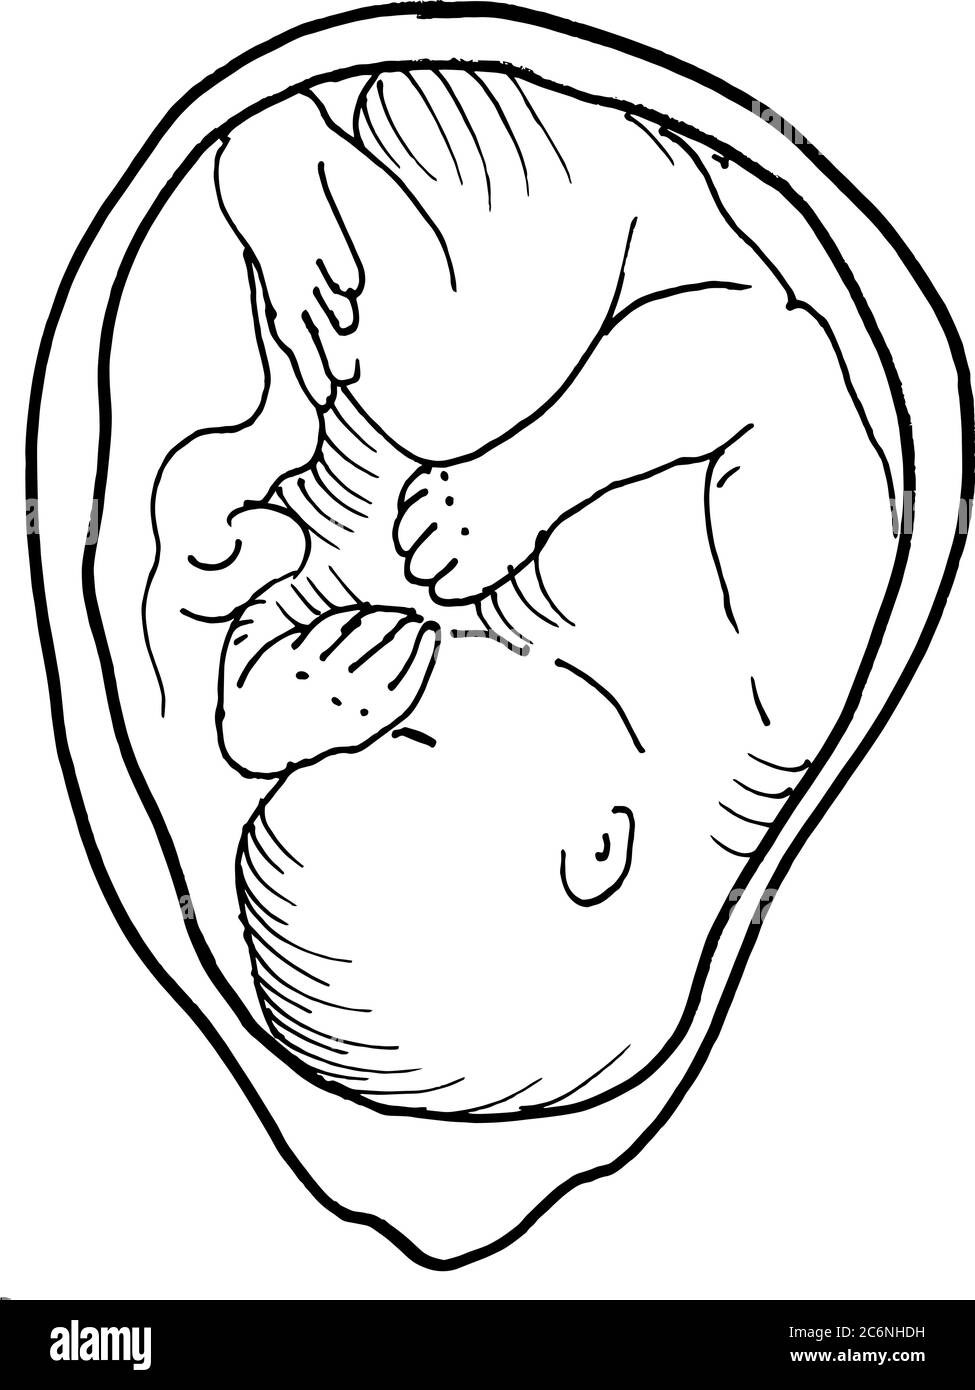 Contorno vettore disegno di contorno dell'embrione umano. Modello modificabile per la progettazione medica Illustrazione Vettoriale